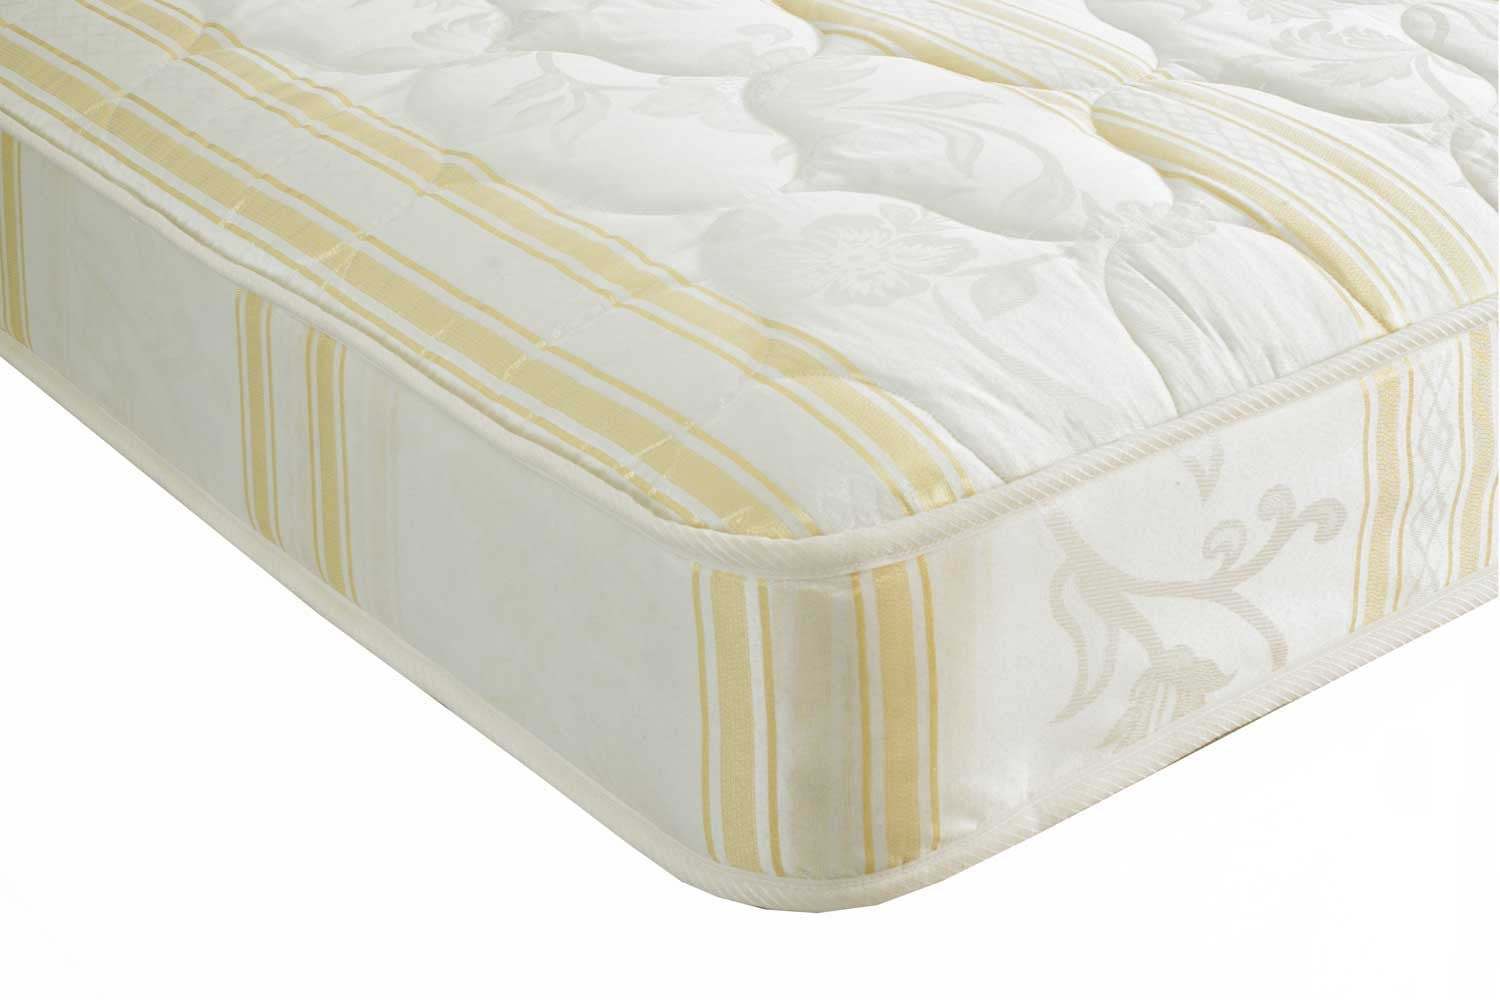 dlx crown mattress review